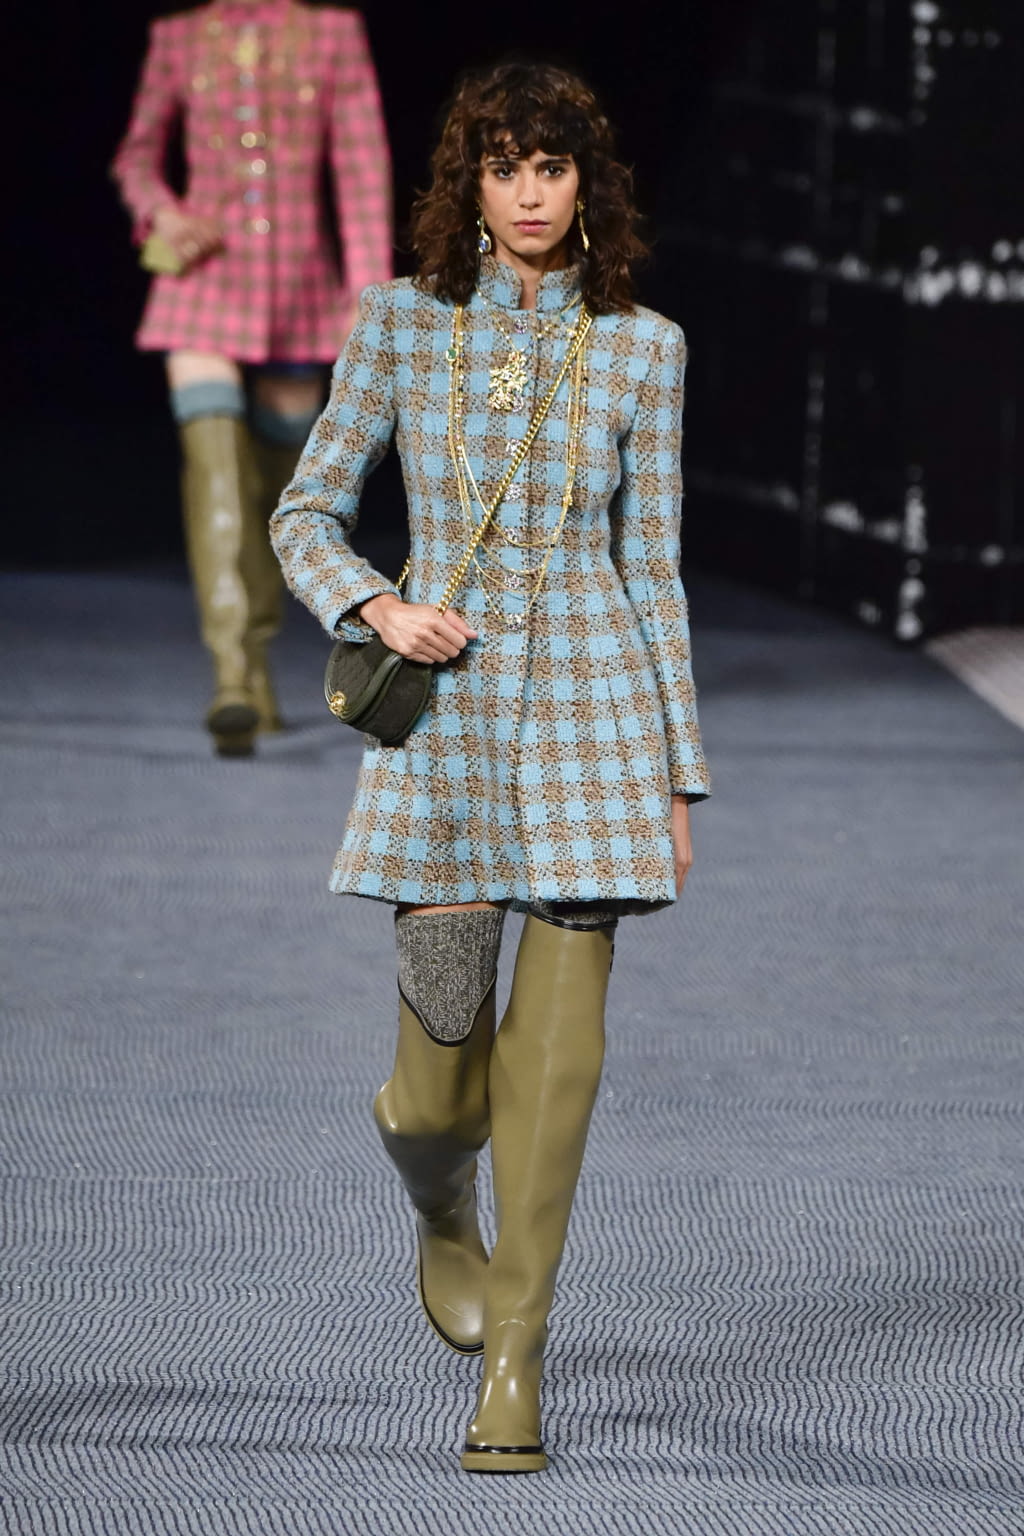 Chanel FW22 womenswear #3 - Tagwalk: The Fashion Search Engine